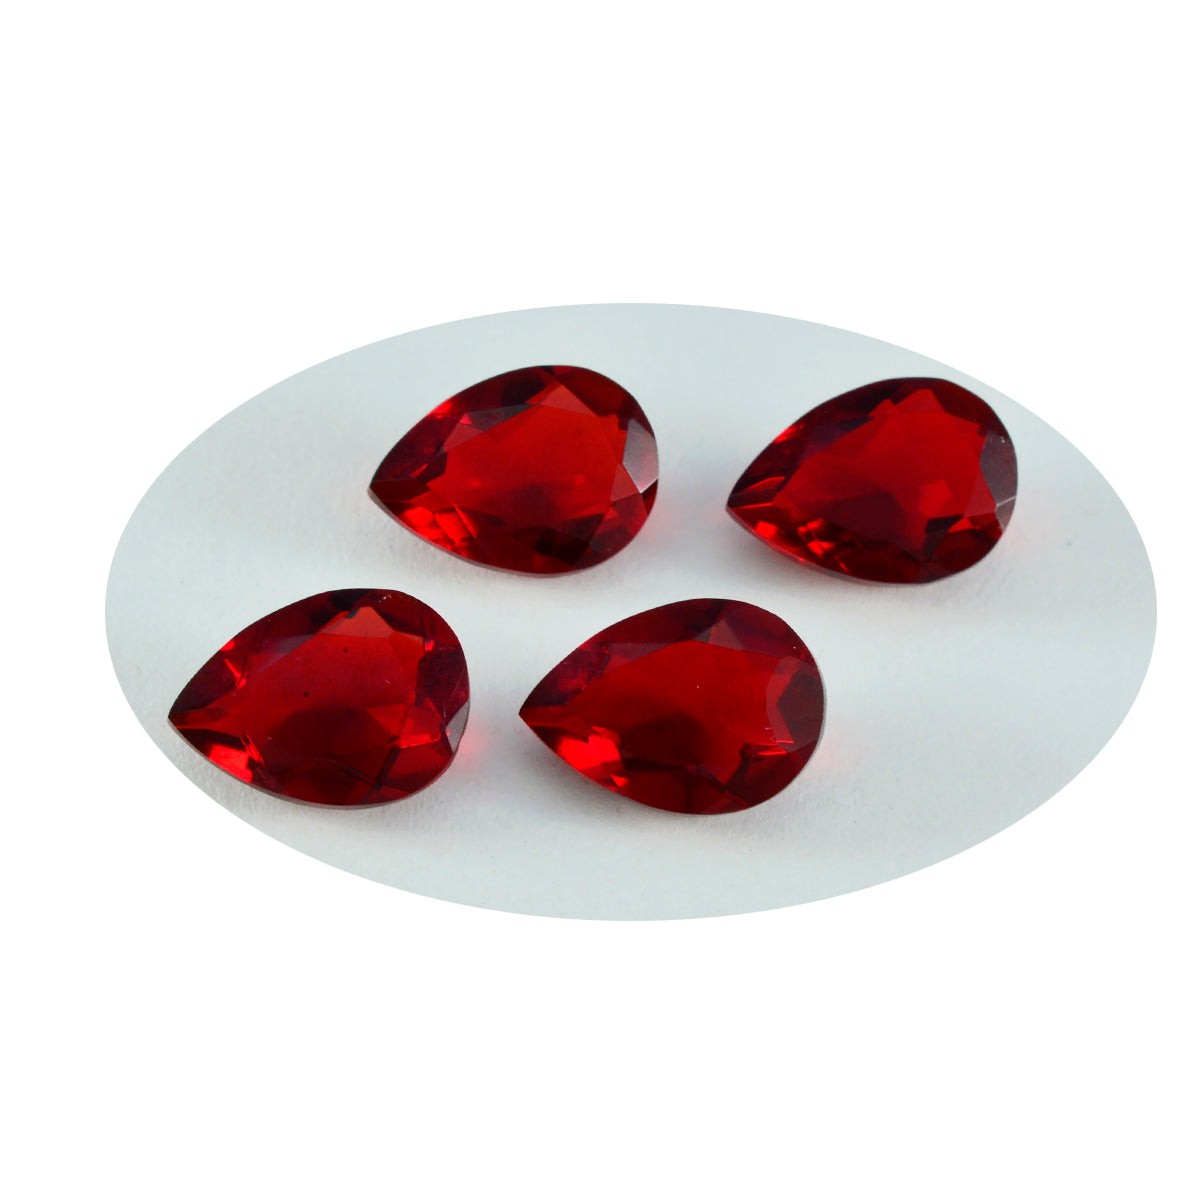 Riyogems 1 Stück roter Rubin mit CZ, facettiert, 8 x 12 mm, Birnenform, niedliche, hochwertige lose Edelsteine